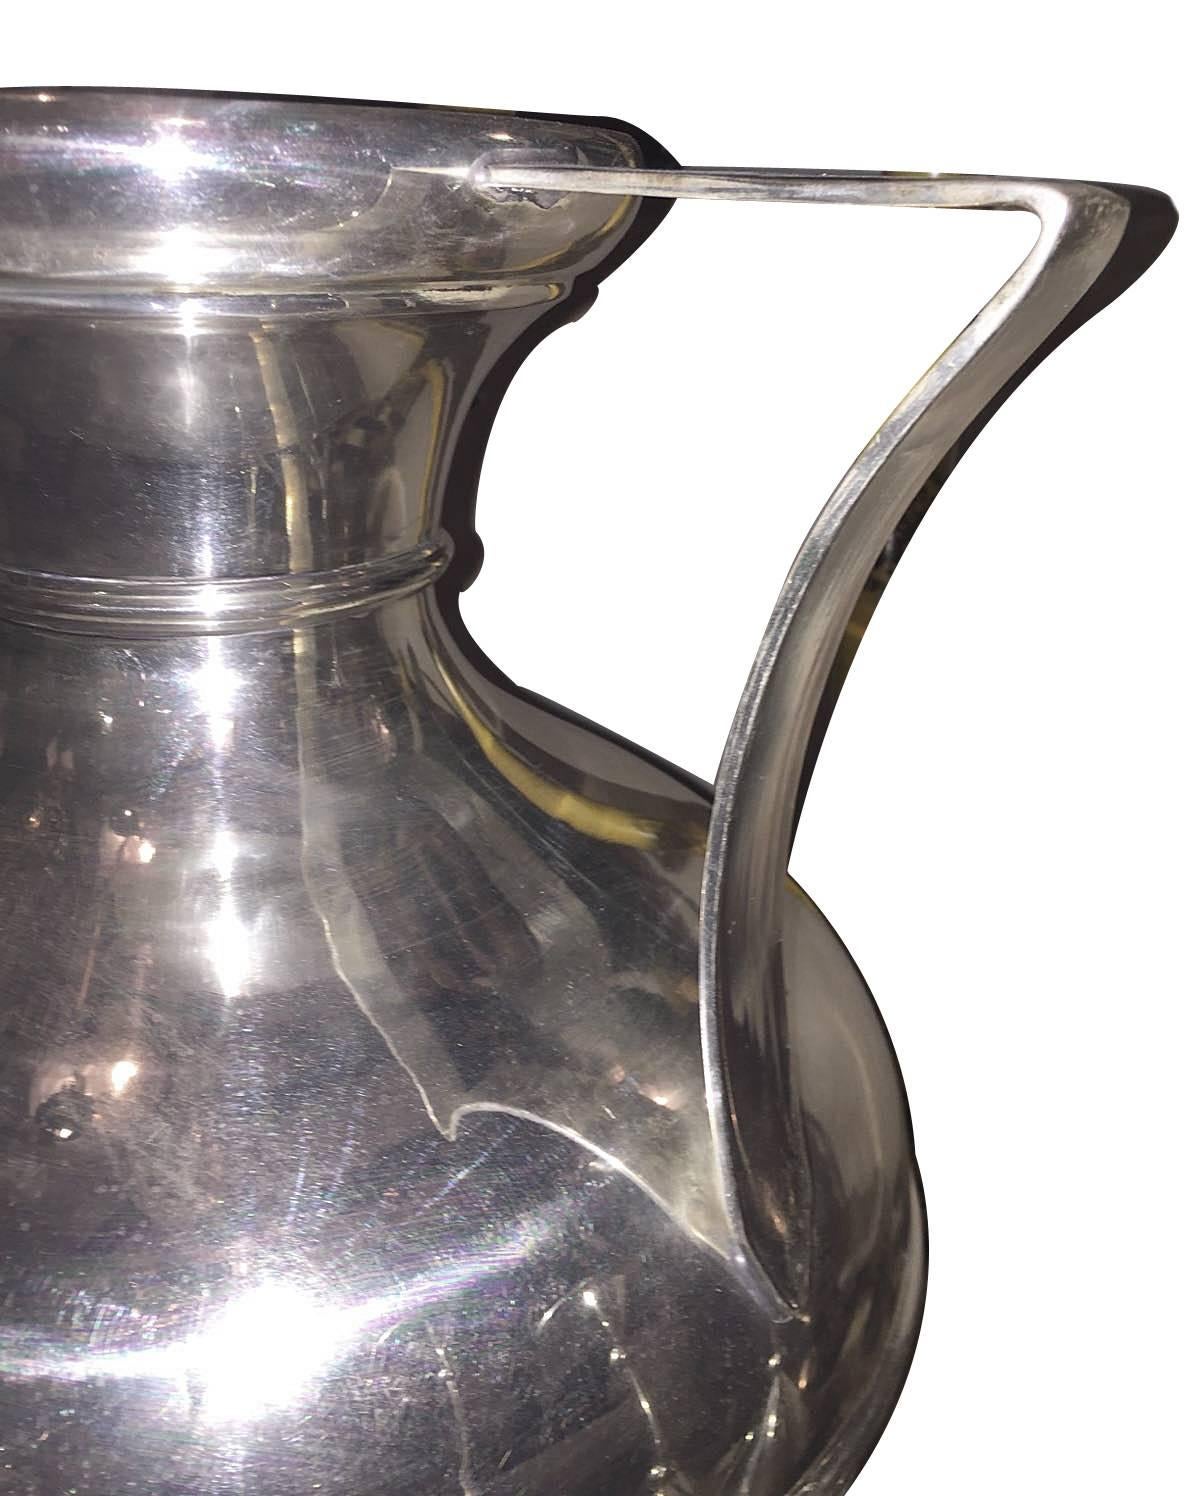 Une paire de vases Art Déco français en métal argenté, avec des poignées surdimensionnées.

Mesures :
hauteur de 13